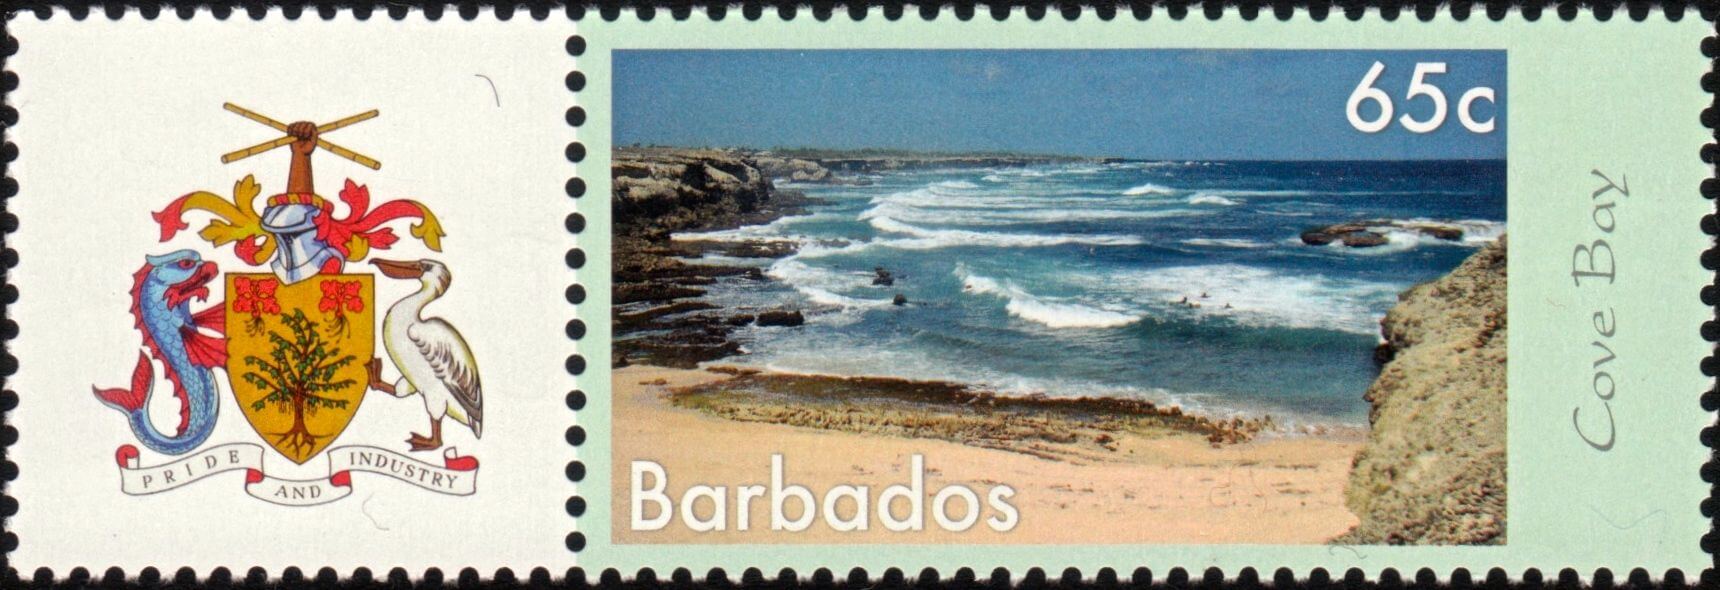 Дам гватемалу и два барбадоса. Барбадос марка Почтовая. Марка Гватемала и Барбадоса. Марки Гватемалы и Барбадоса почтовые.